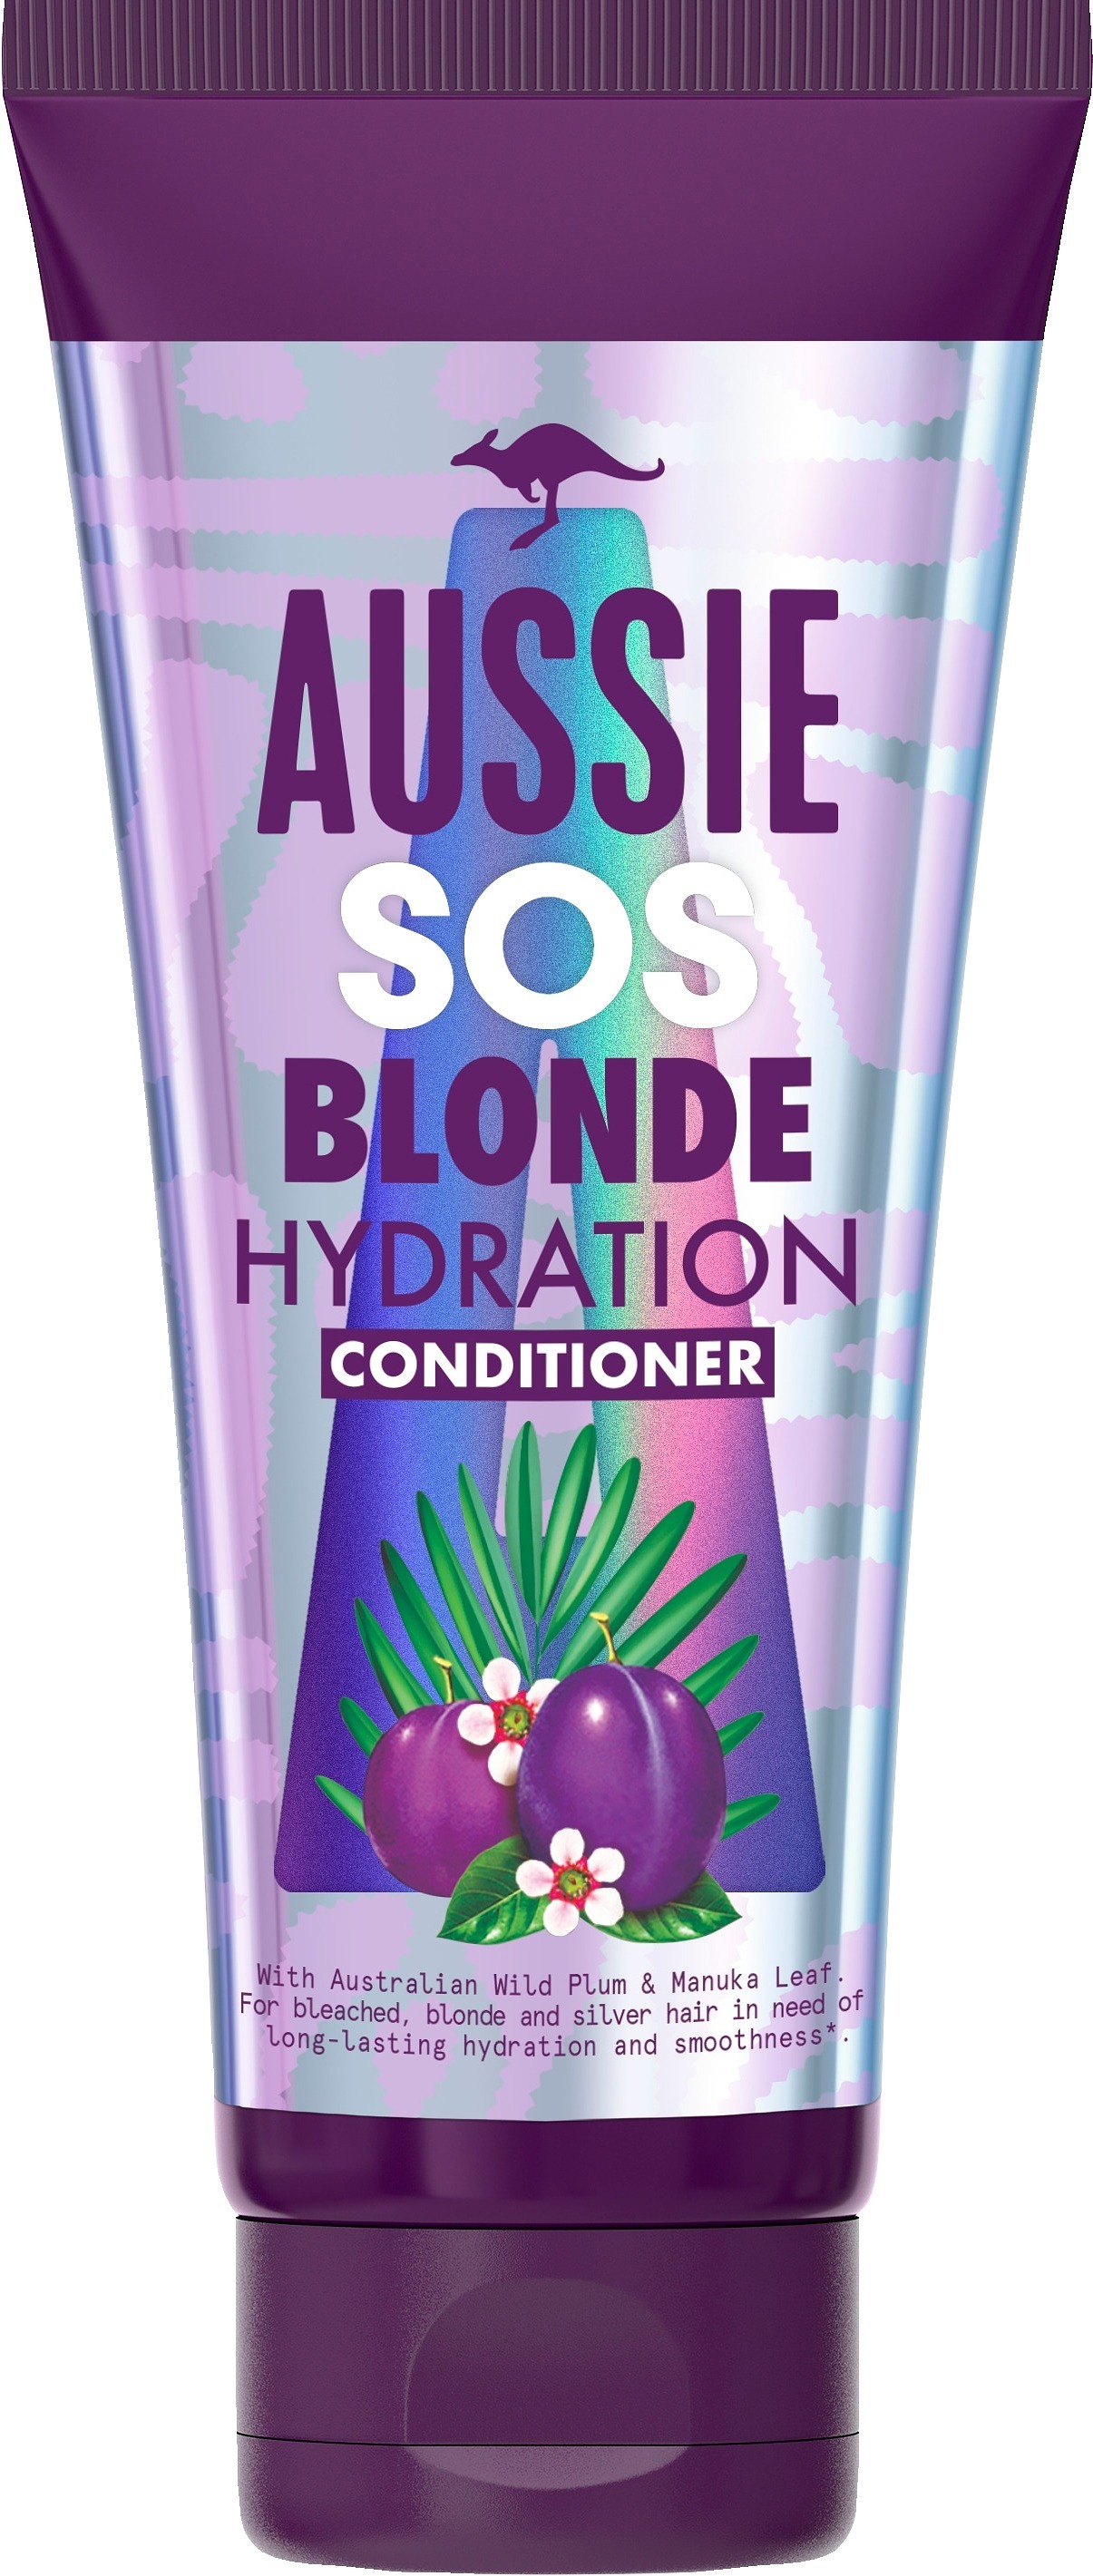 Aussie SOS Blonde Hydration Conditioner 200 ml